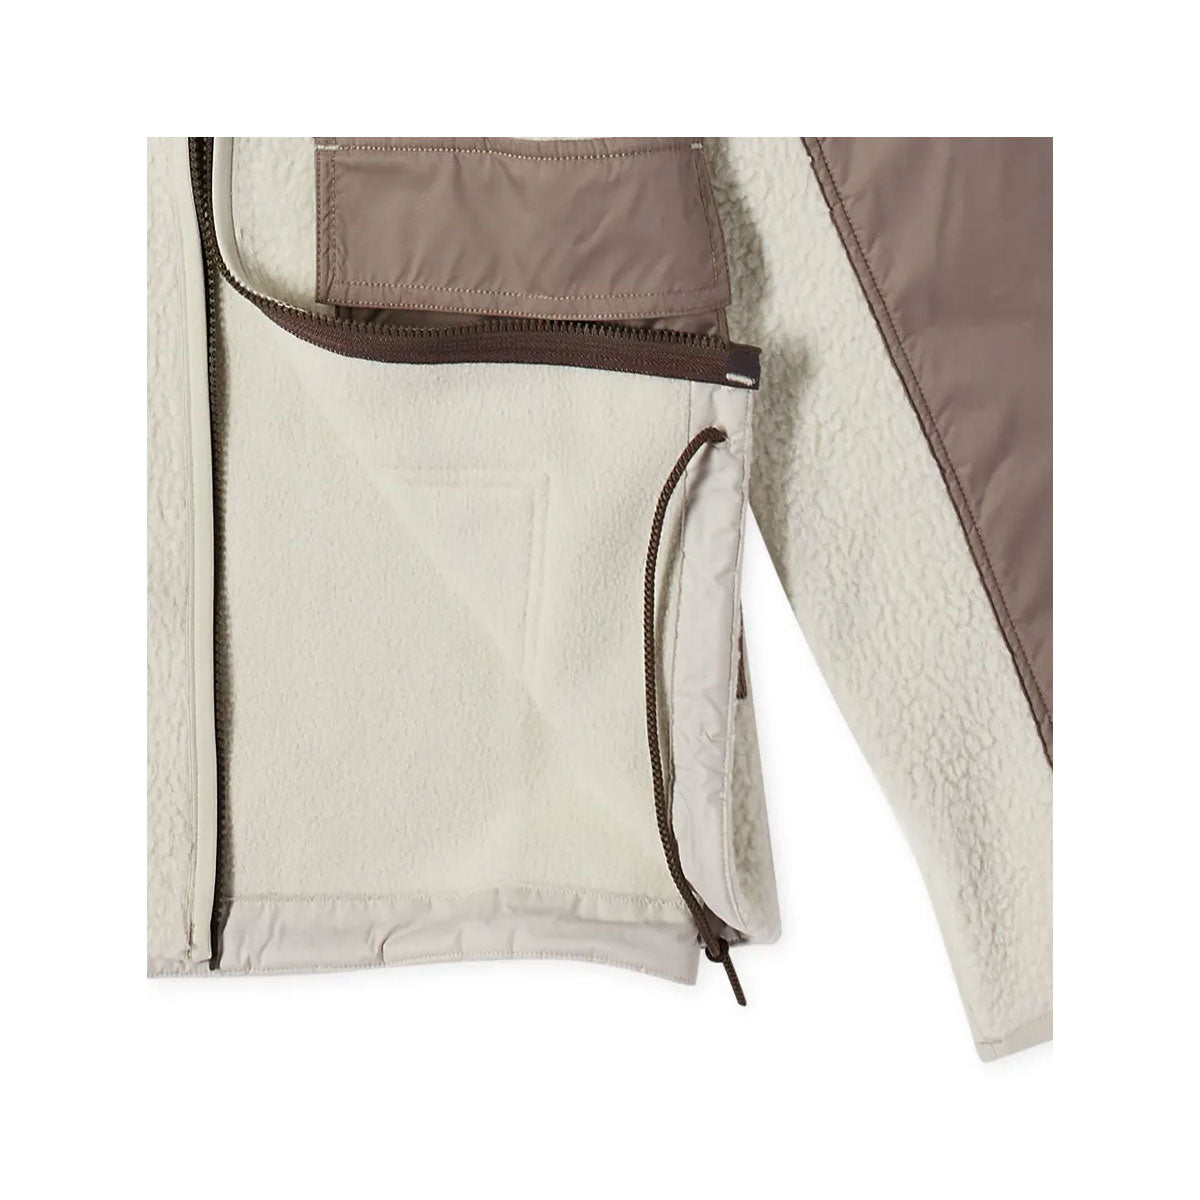 Nike Men's Sportswear Sperpa Fleece Essentials+ Jacket Light Bone